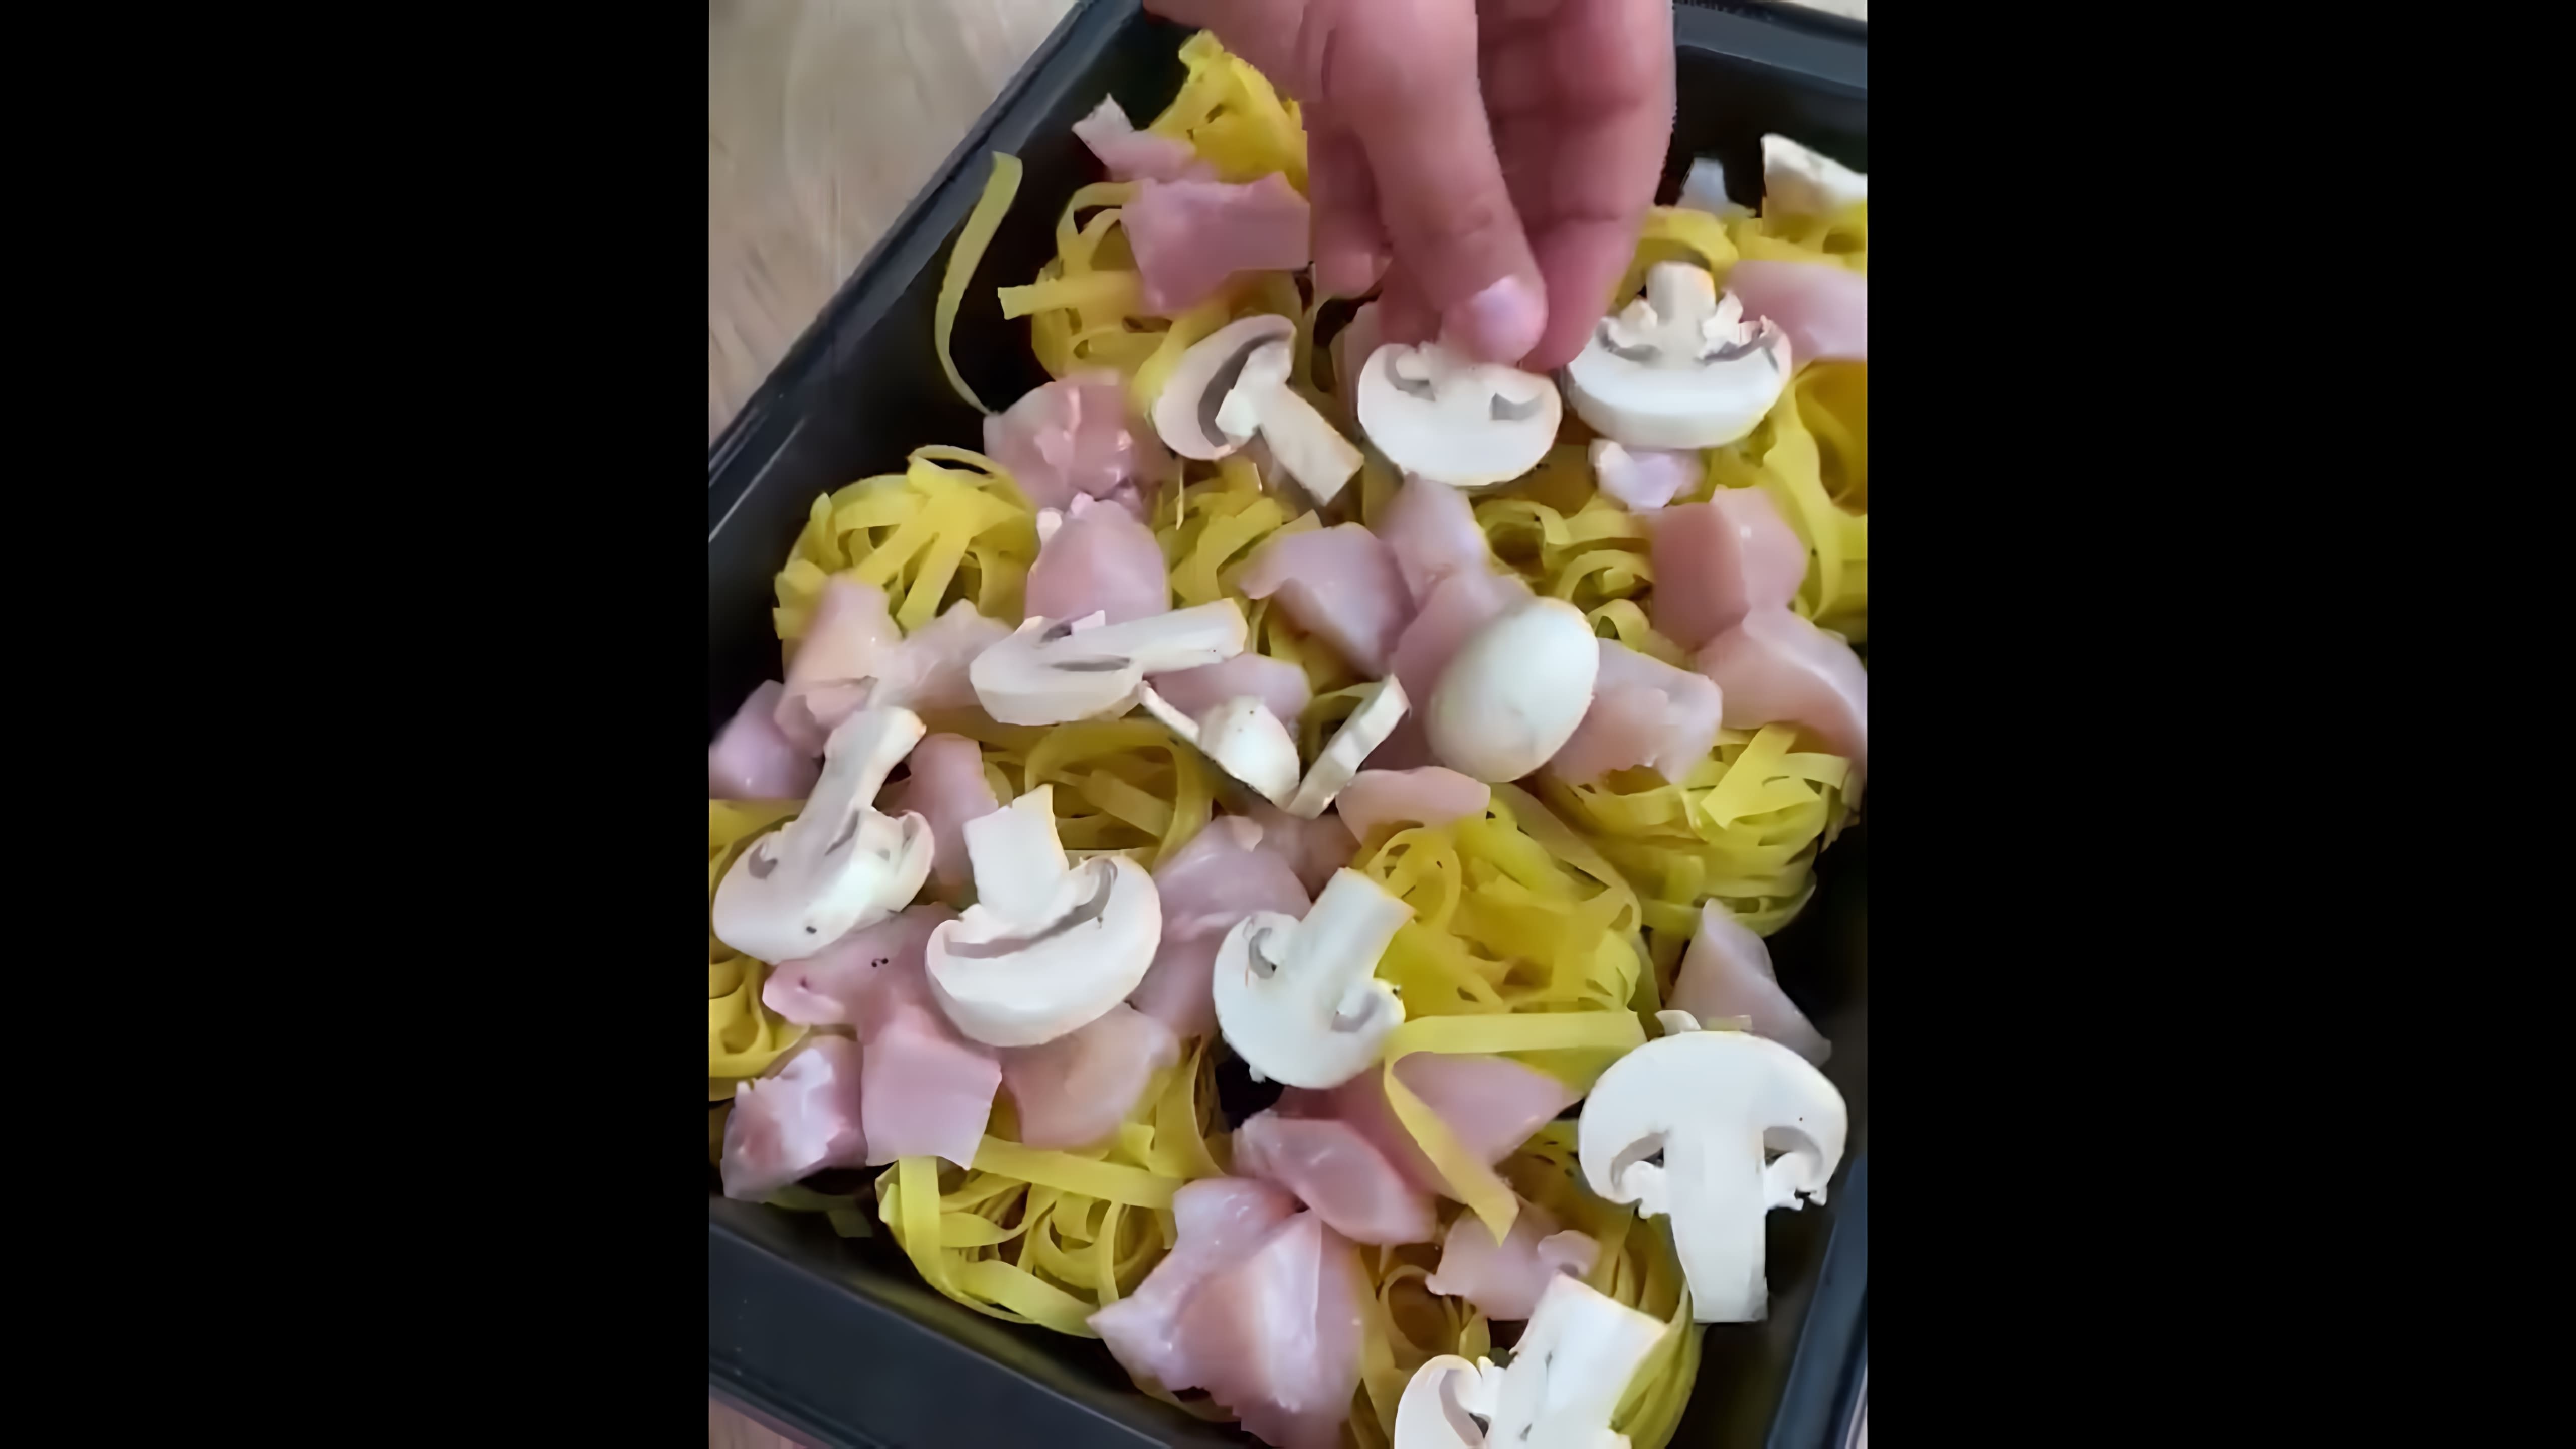 "Рецепт для ленивых: курица с лапшой в духовке" - это видео-ролик, который показывает, как приготовить вкусное и простое блюдо